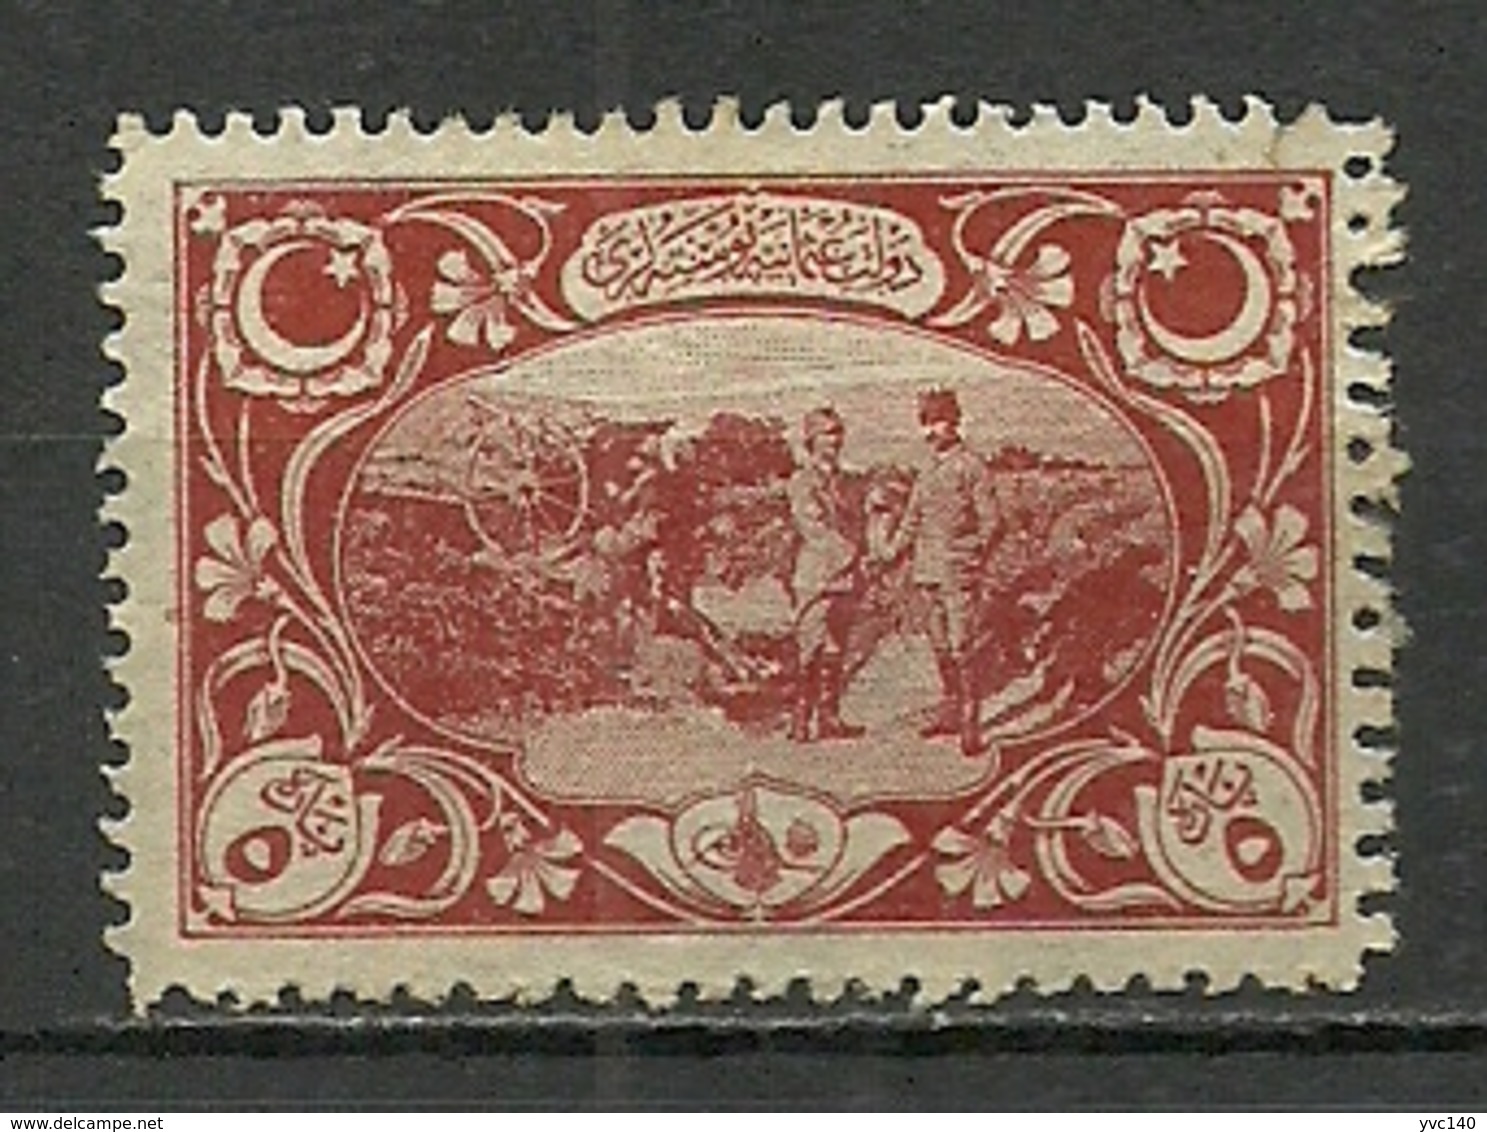 Turkey; 1917 Vienna Printing Not Issued Stamp 5 P. (Original Gum) - Ongebruikt